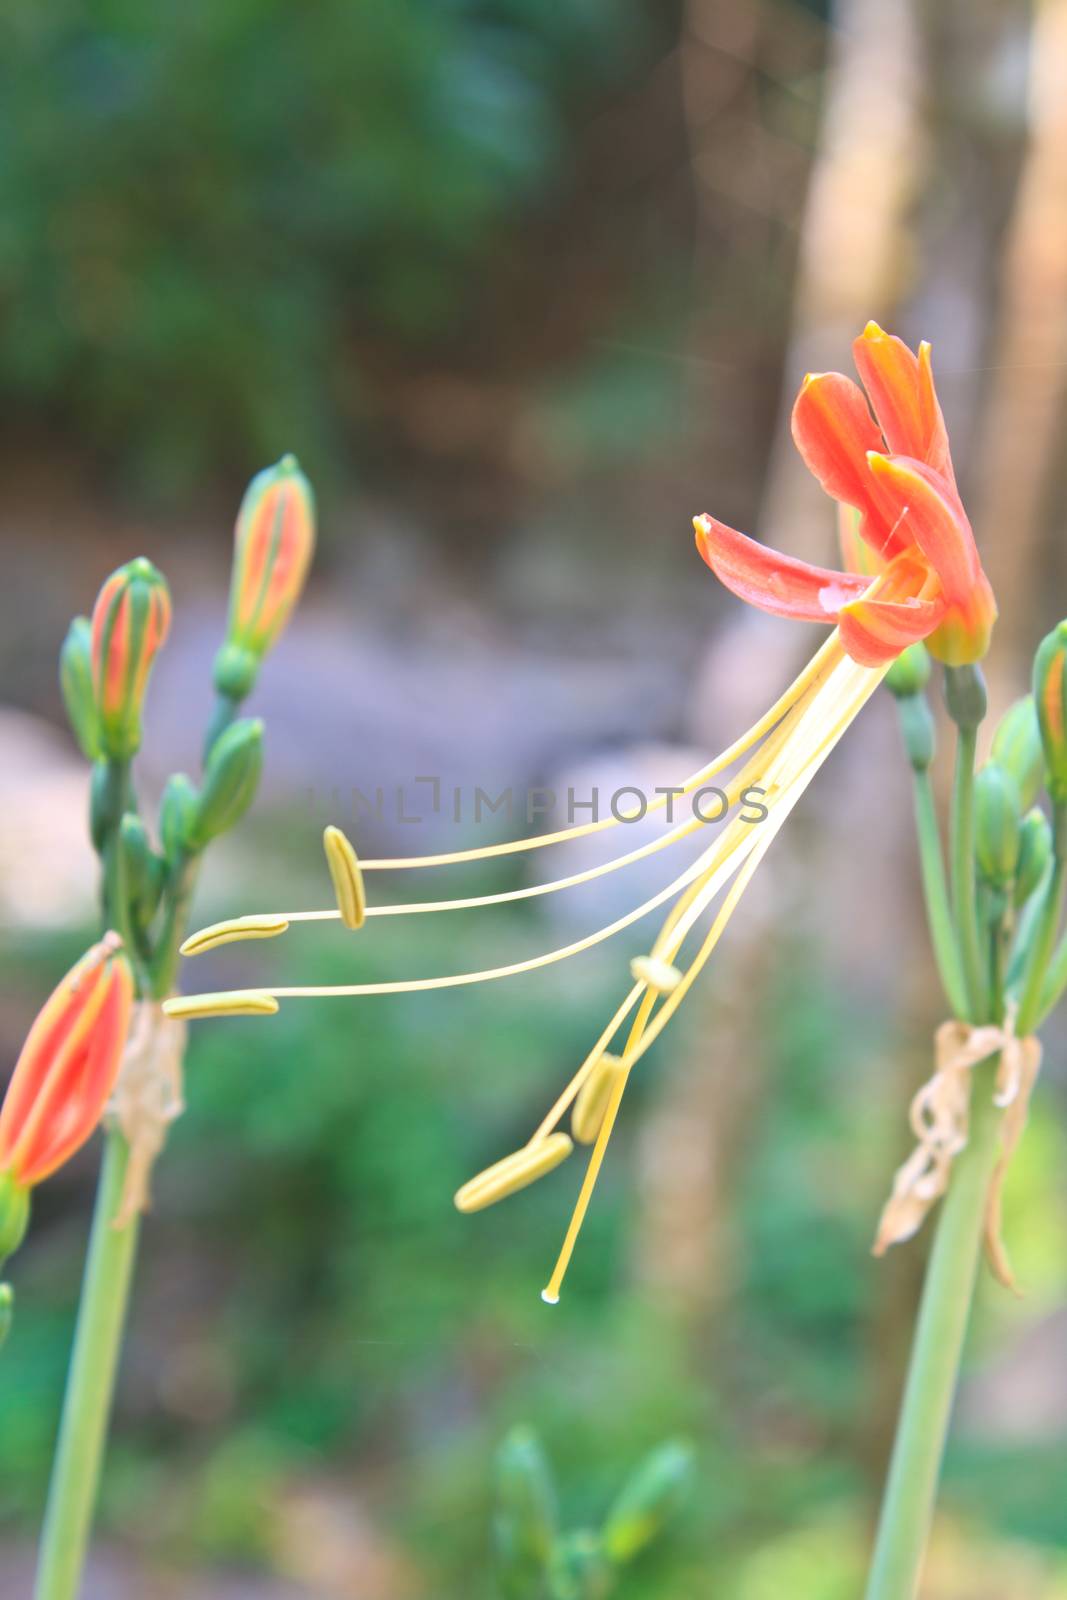 Queen Lily flower  in garden, Hippeastrum cybister or 
Phaedranassa spp. 
 